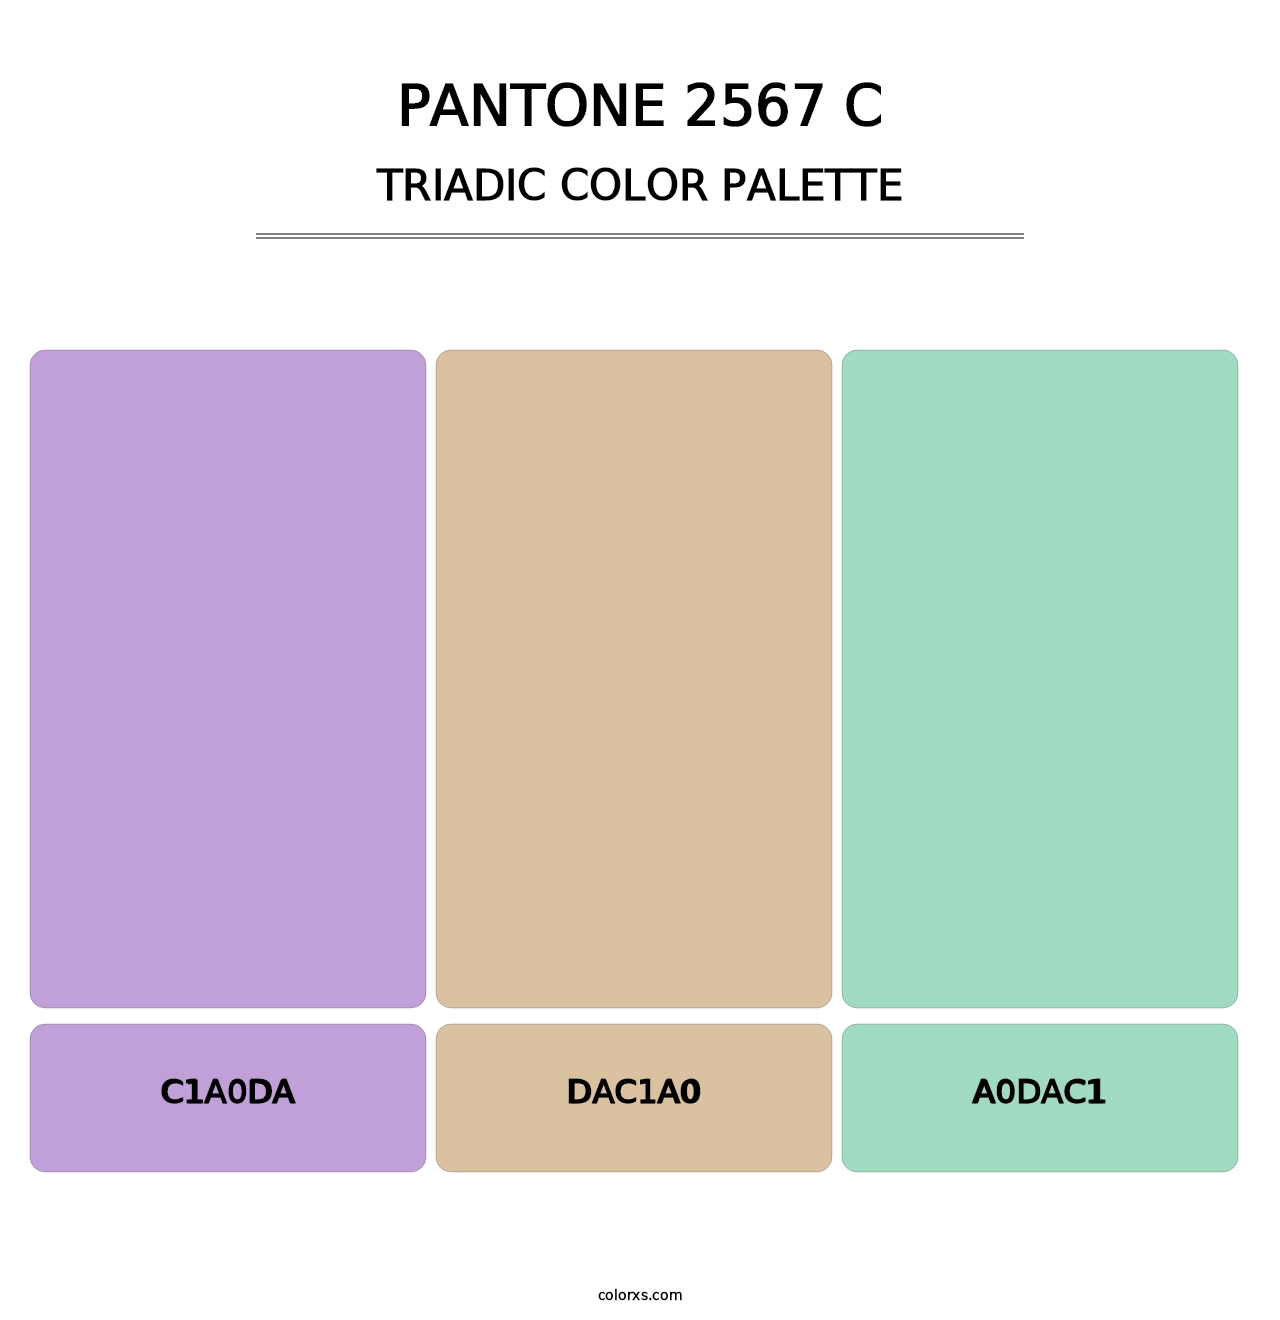 PANTONE 2567 C - Triadic Color Palette